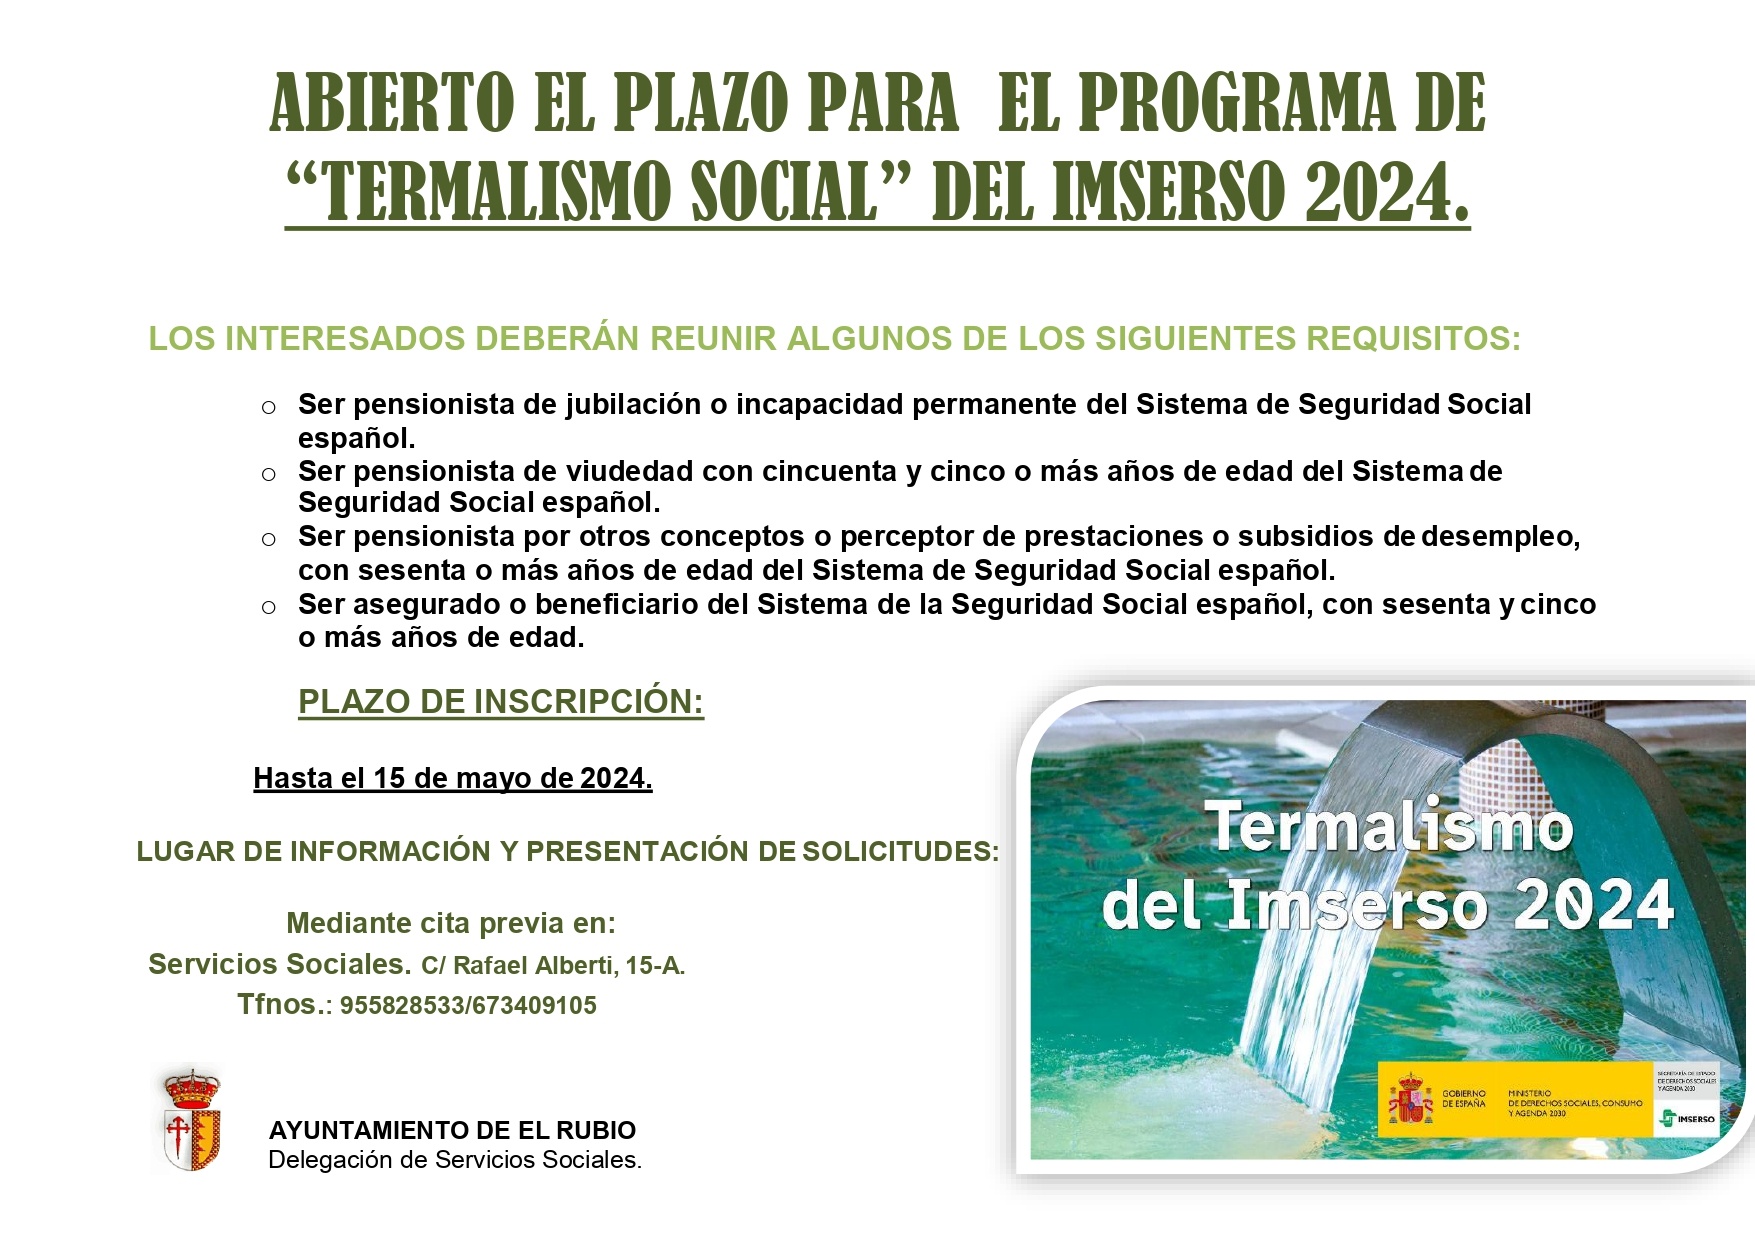 ABIERTO EL PLAZO PARA EL PROGRAMA TERMALISMO SOCIAL DEL IMSERSO 2024